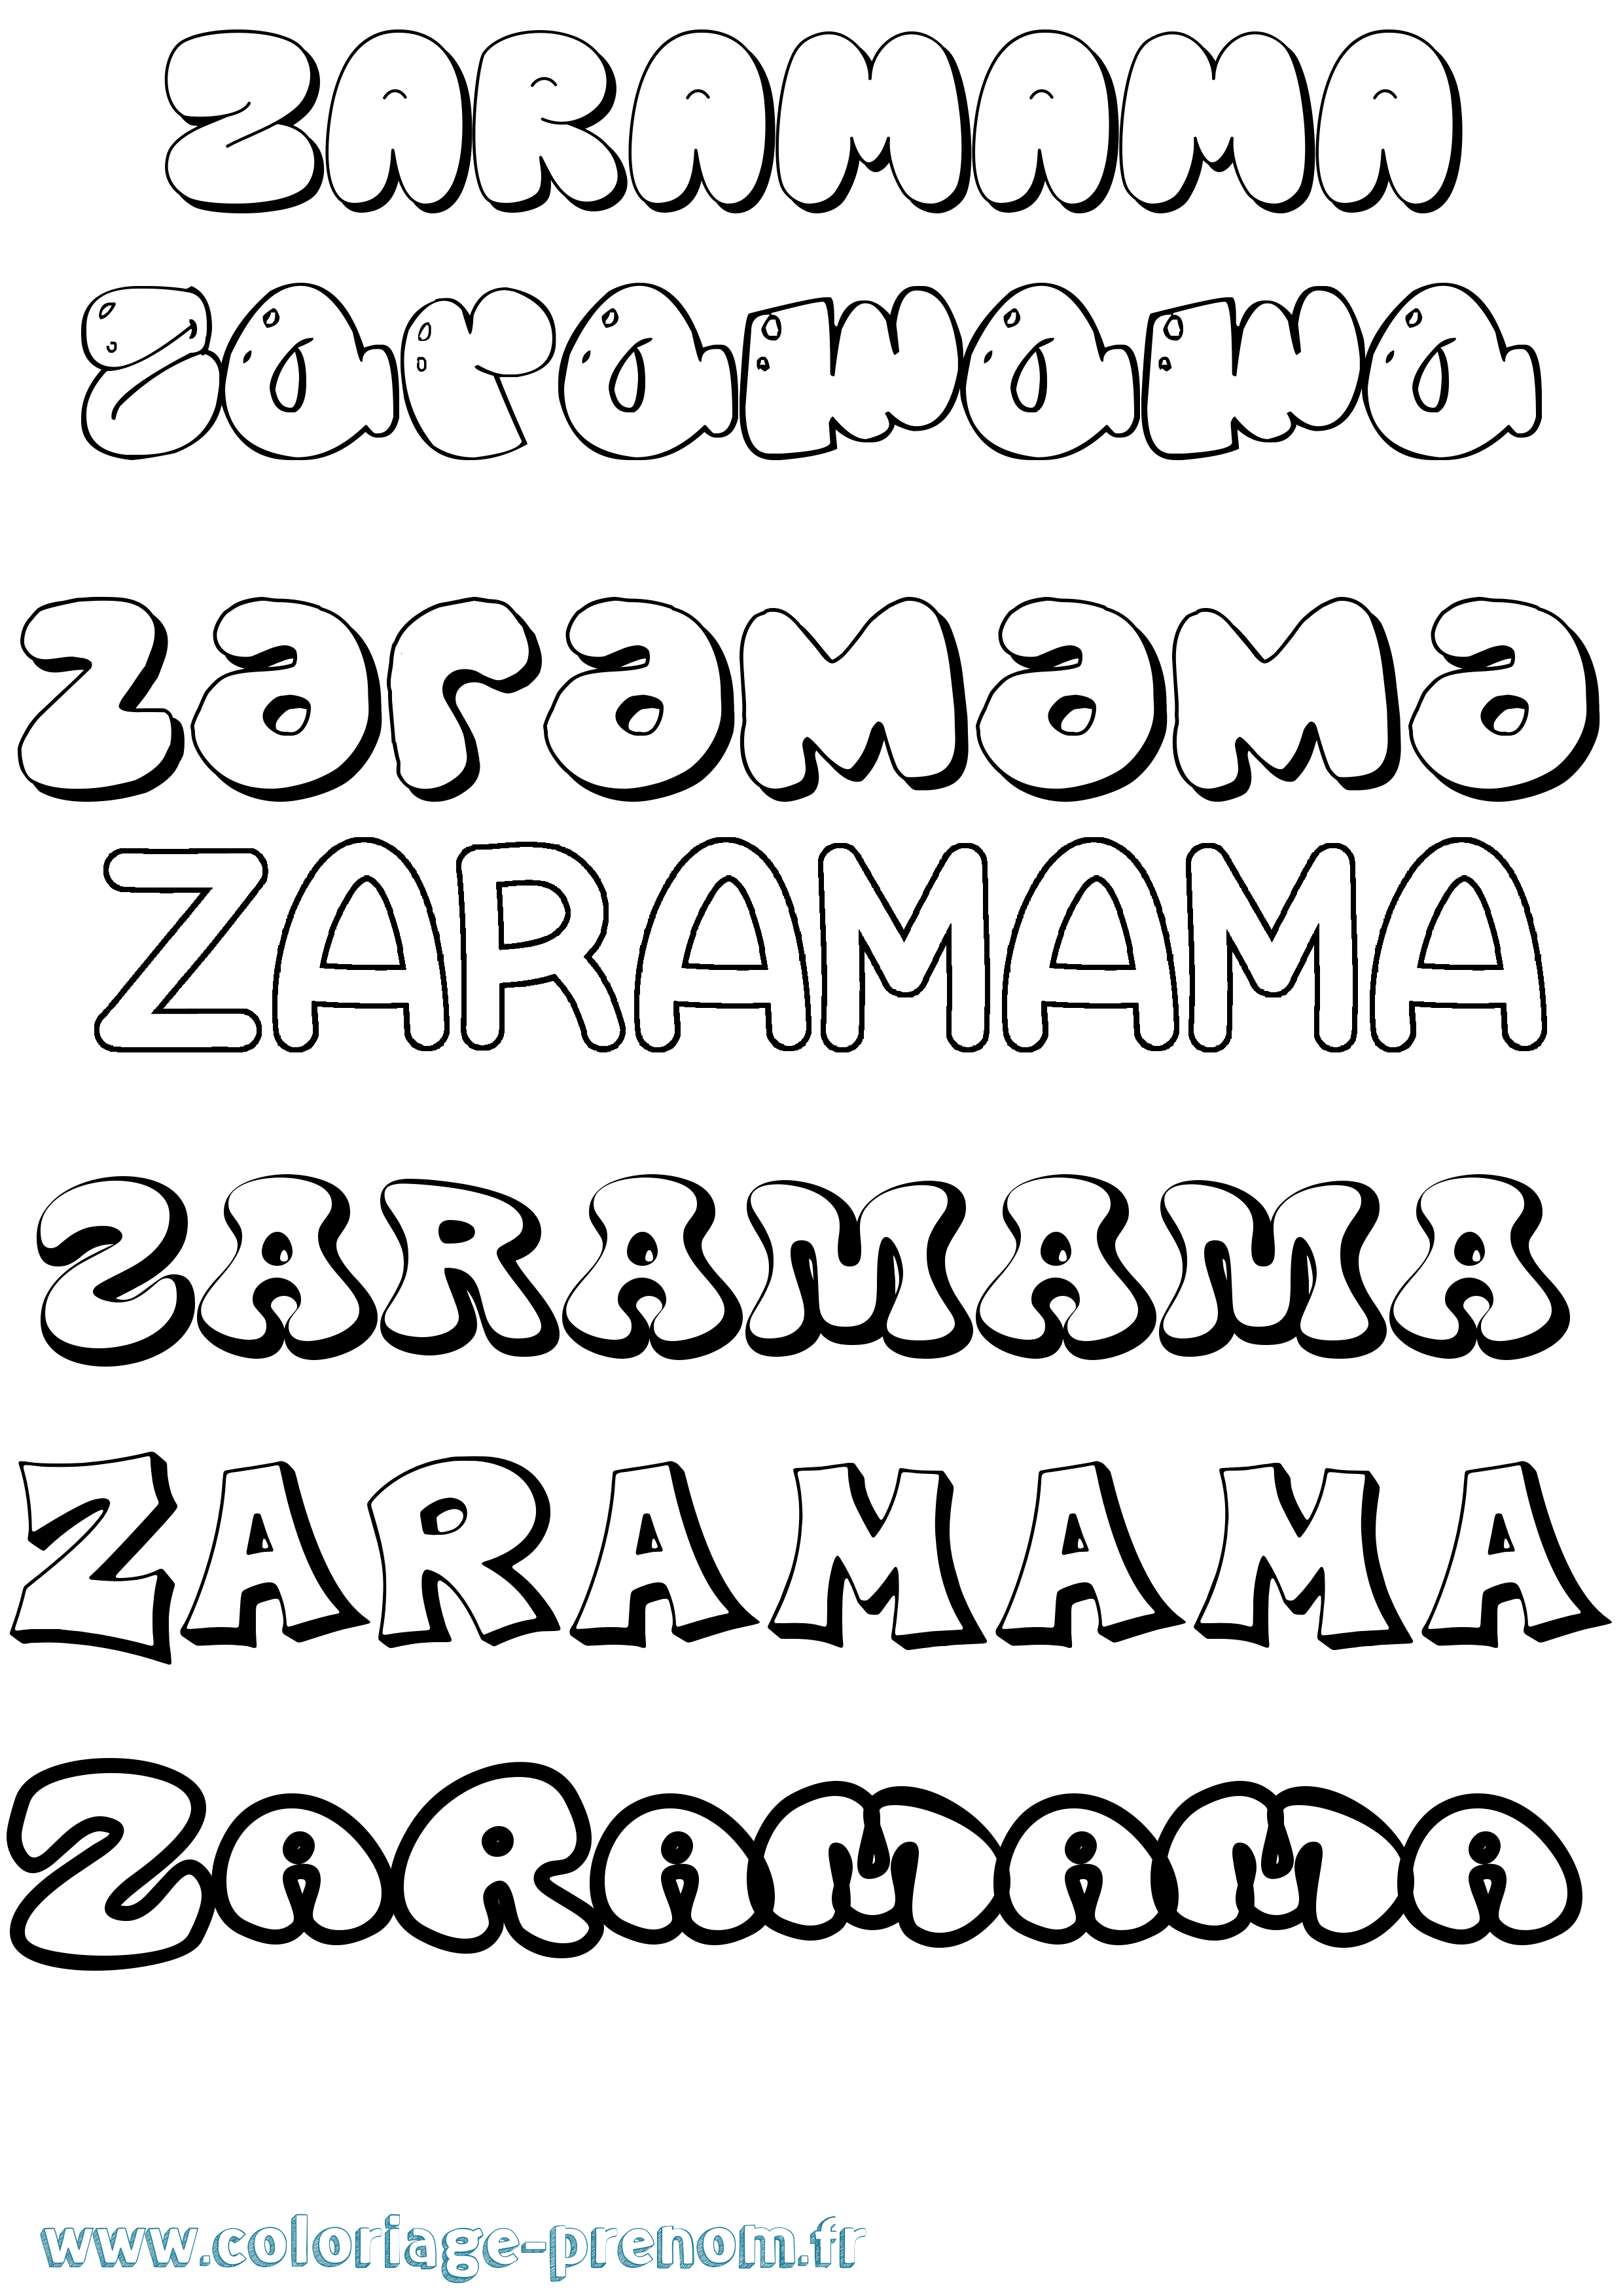 Coloriage prénom Zaramama Bubble